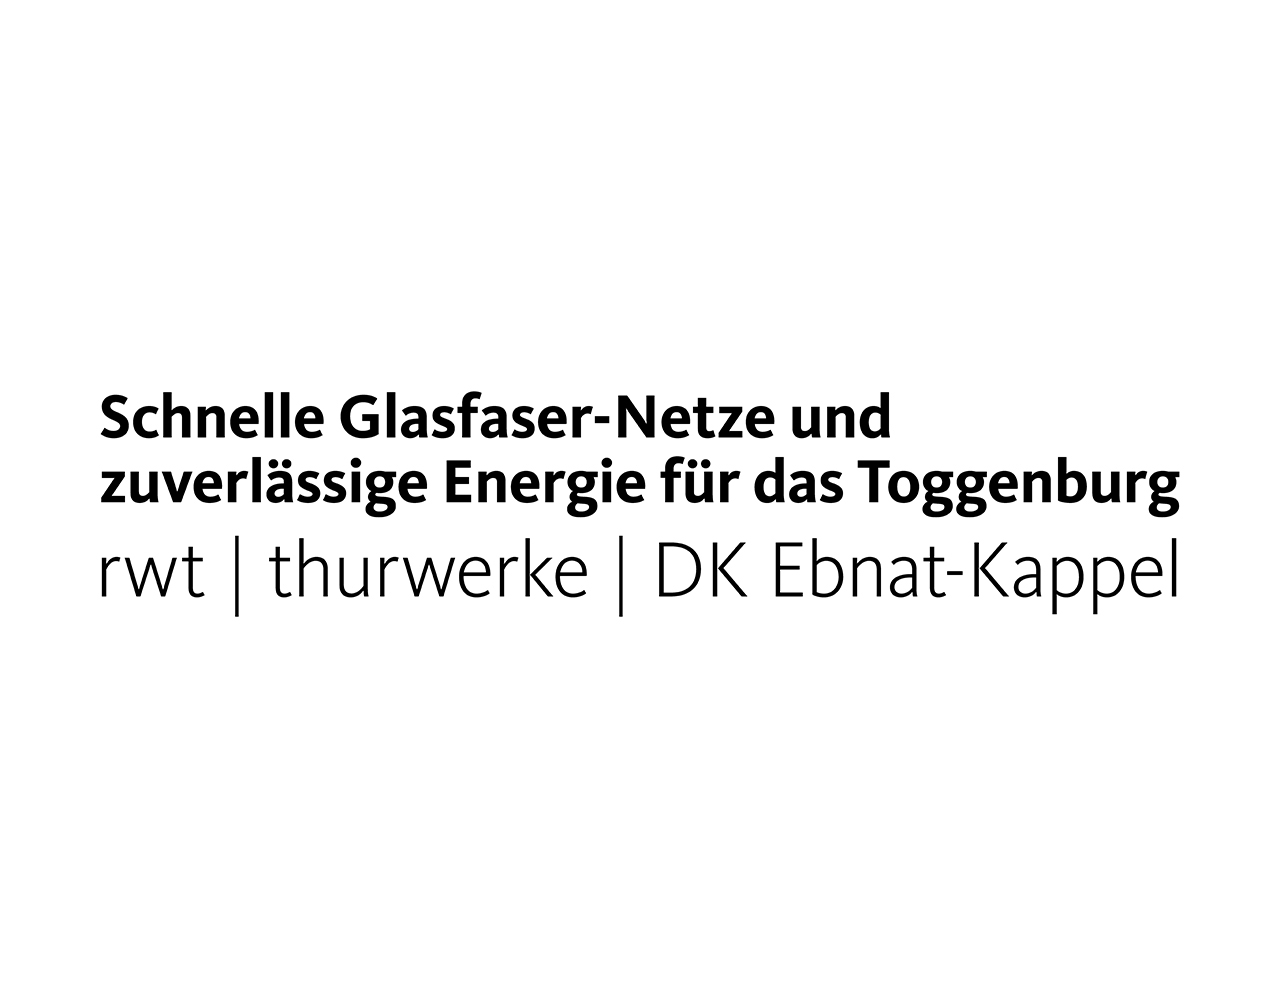 Regionalwerk Toggenburg AG, Thurwerke AG, DORFKORPORATION EBNAT-KAPPEL